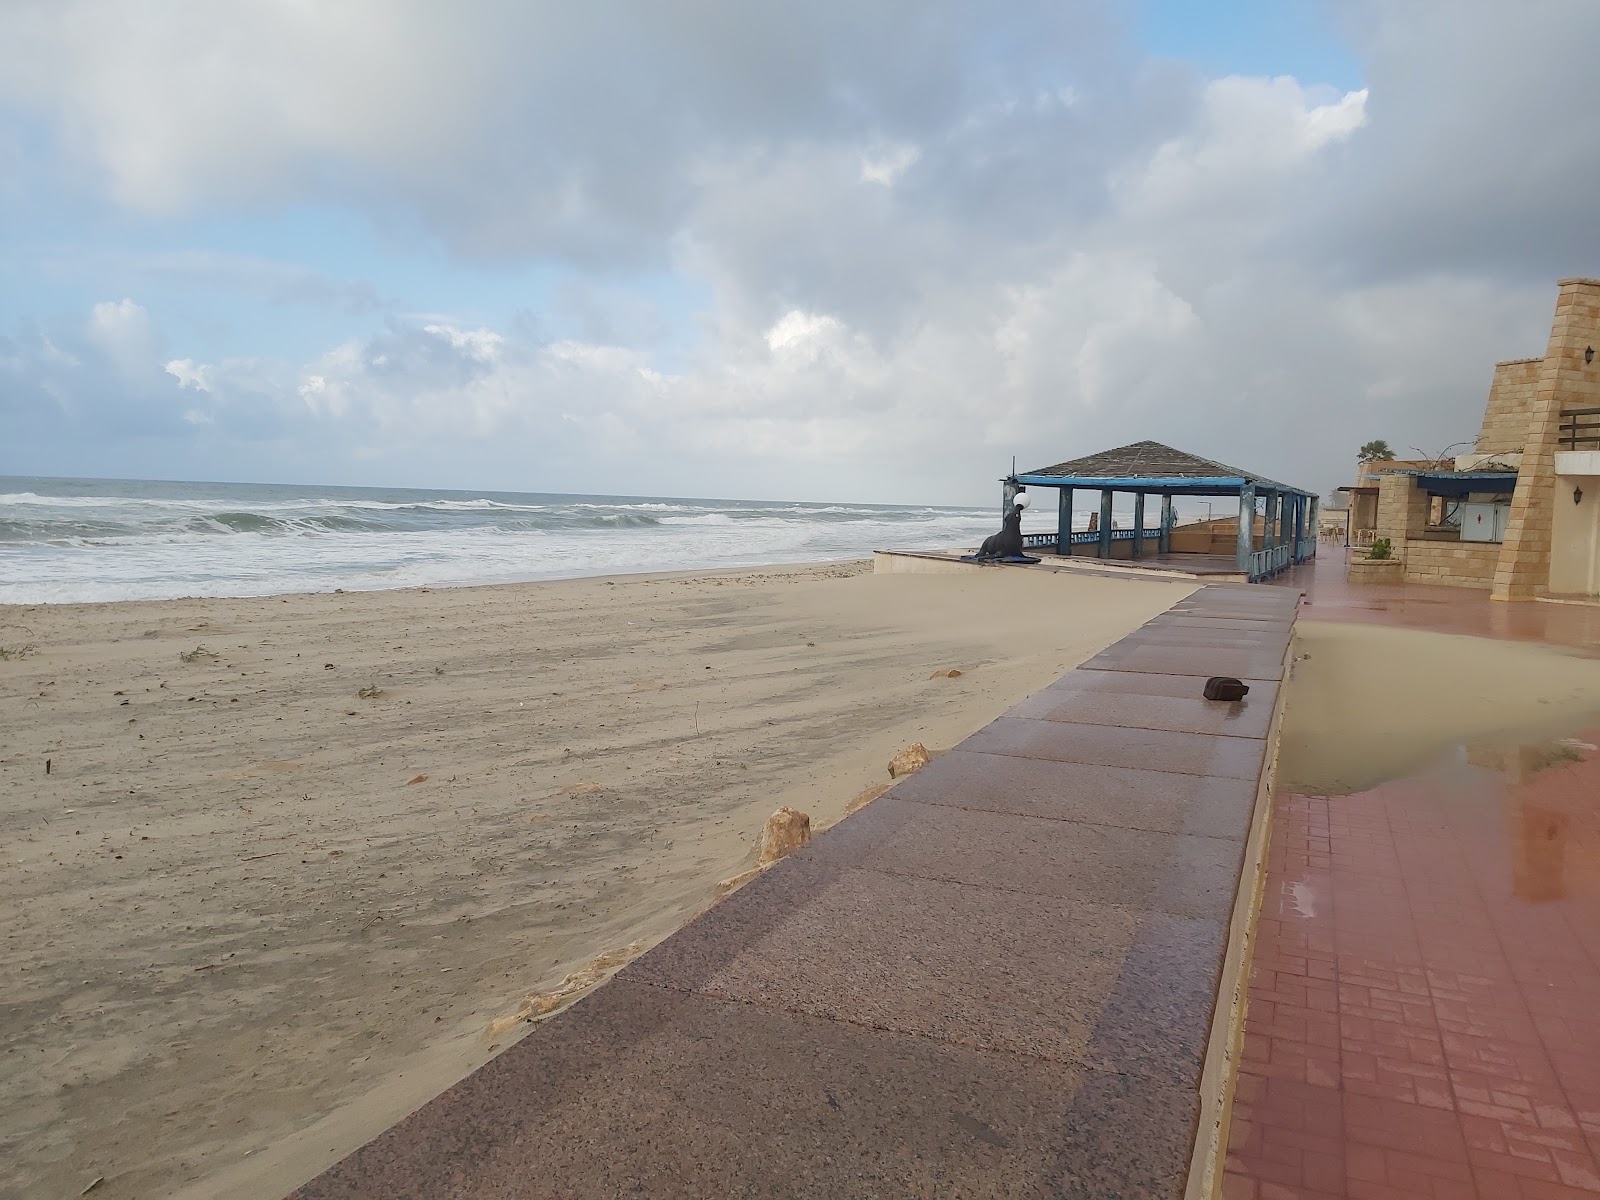 Photo de Shokry Al Kotaly Beach - endroit populaire parmi les connaisseurs de la détente